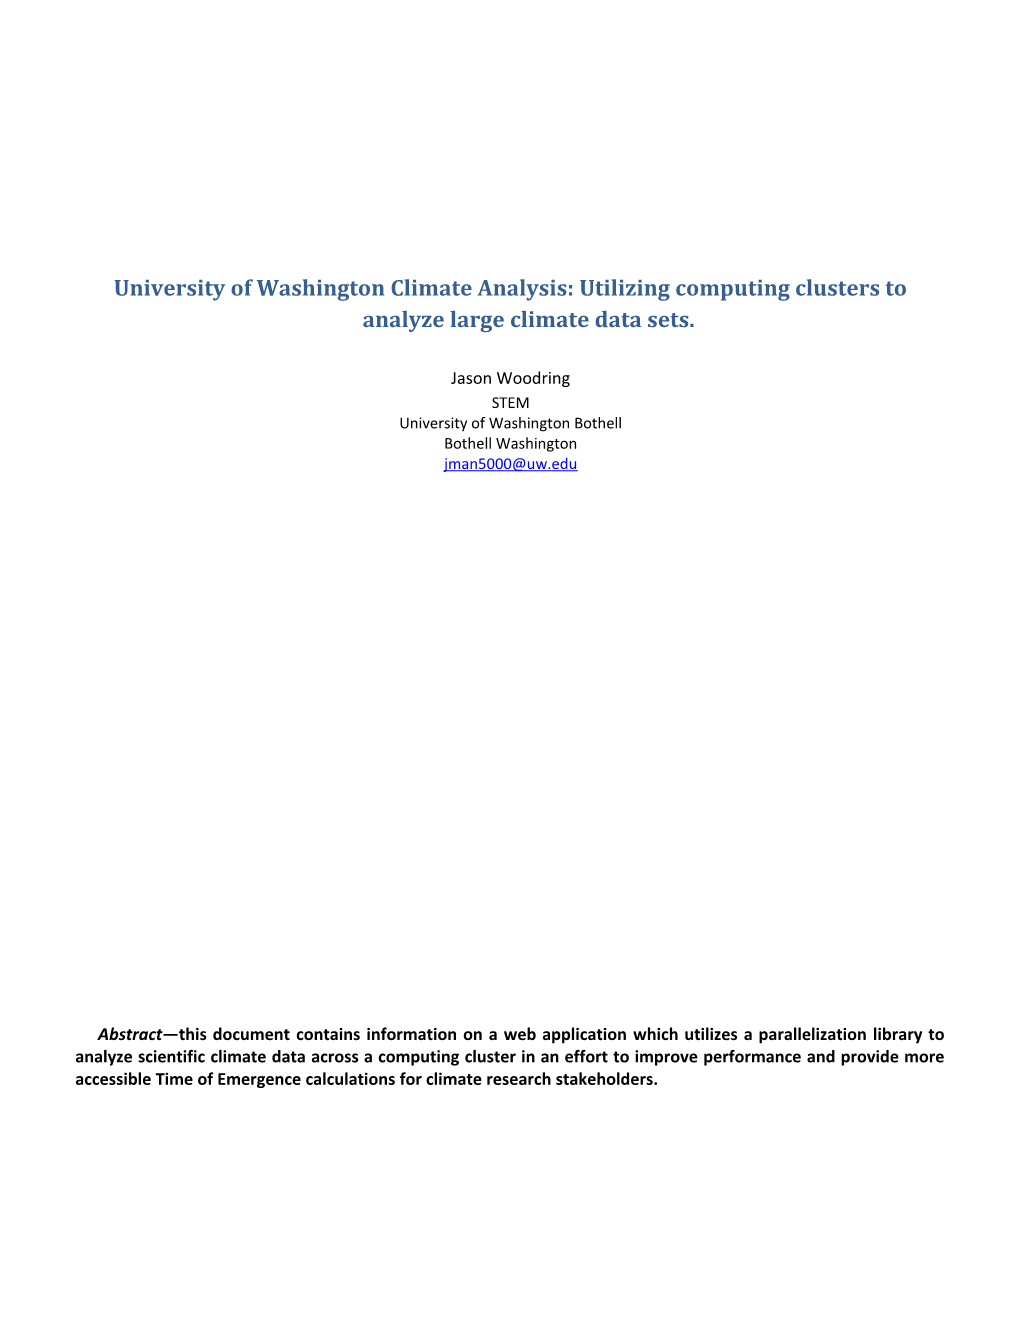 University of Washington Climate Analysis: Utilizing Computing Clusters to Analyze Large